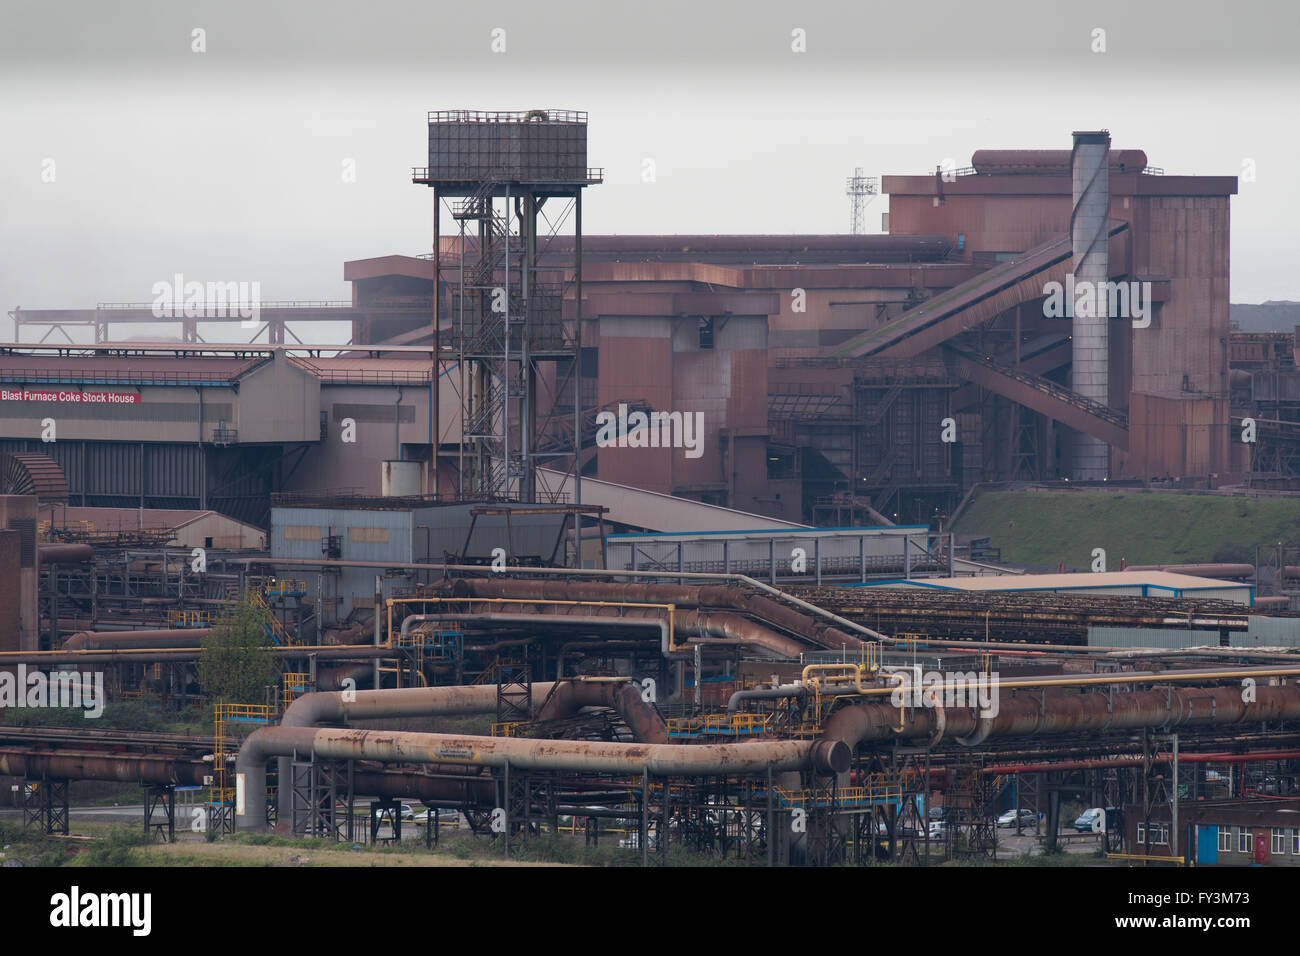 Tata Steel steel works à Port Talbot, Pays de Galles du sud. Des milliers d'emplois au Royaume-Uni sont à risque en tant que propriétaires d'indien Tata vendre UK. Banque D'Images